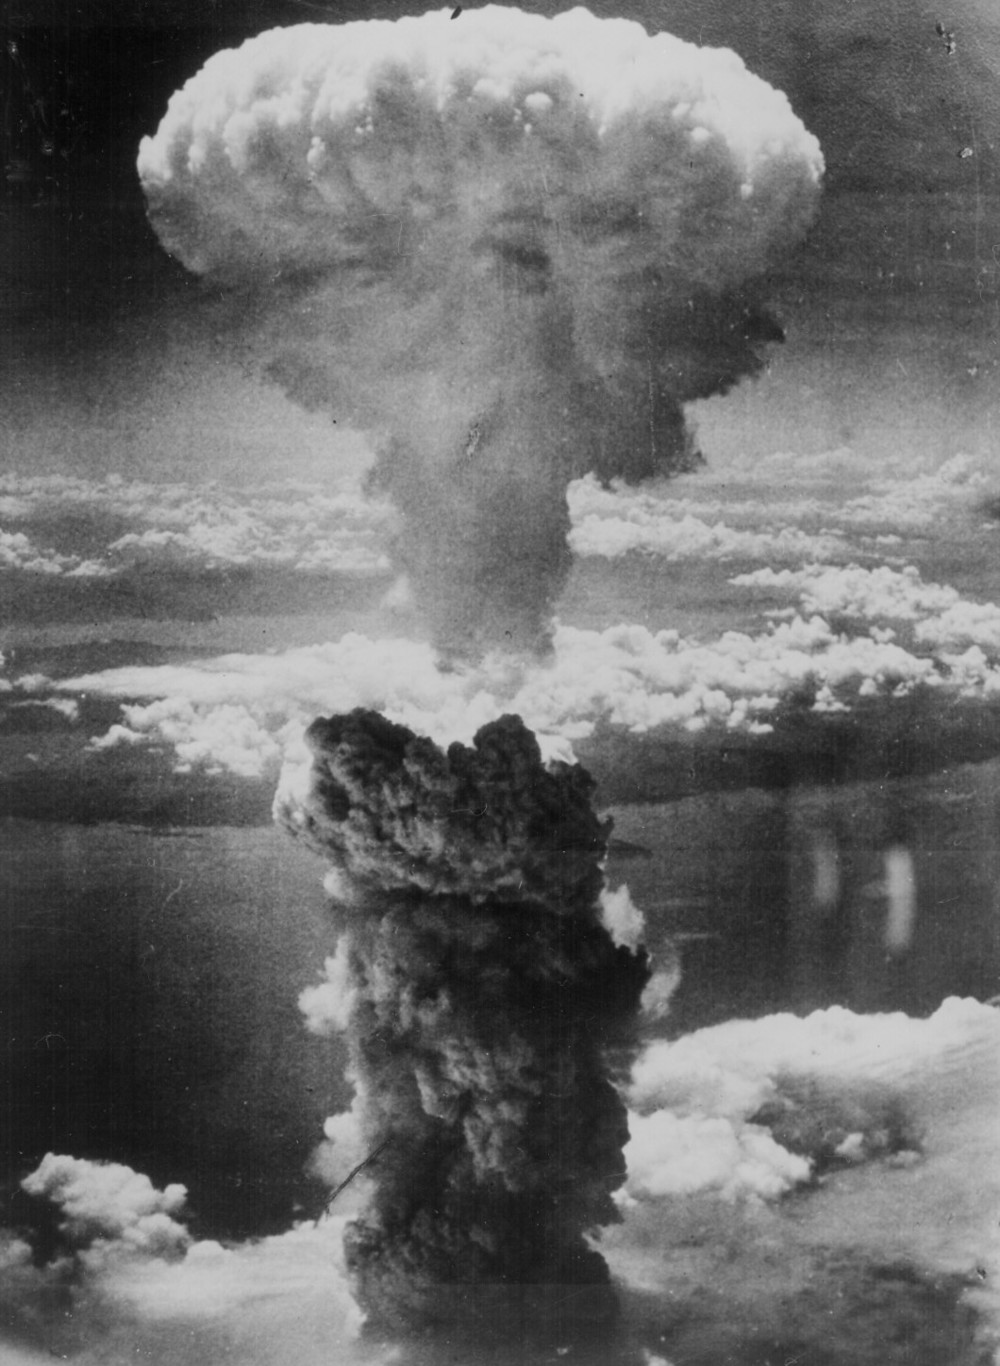 ロシア有力議員「原爆投下は人道に対する罪」　主張の狙いは日米間に「くさび」？